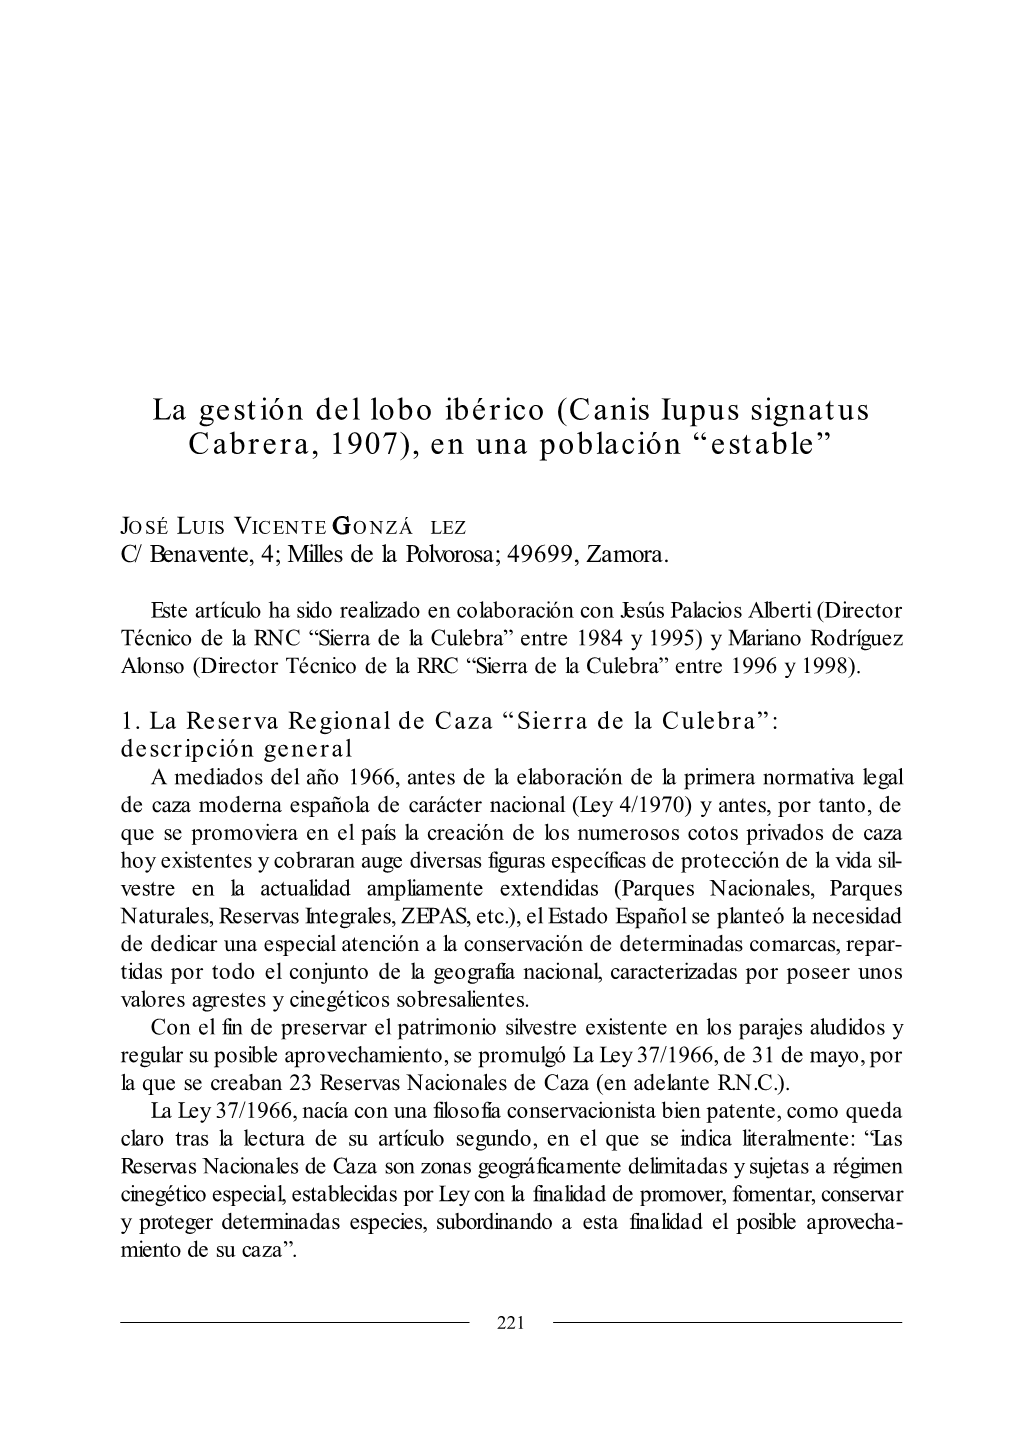 La Gestión Del Lobo Ibérico (Canis Iupus Signatus Cabrera, 1907), En Una Población “Estable”